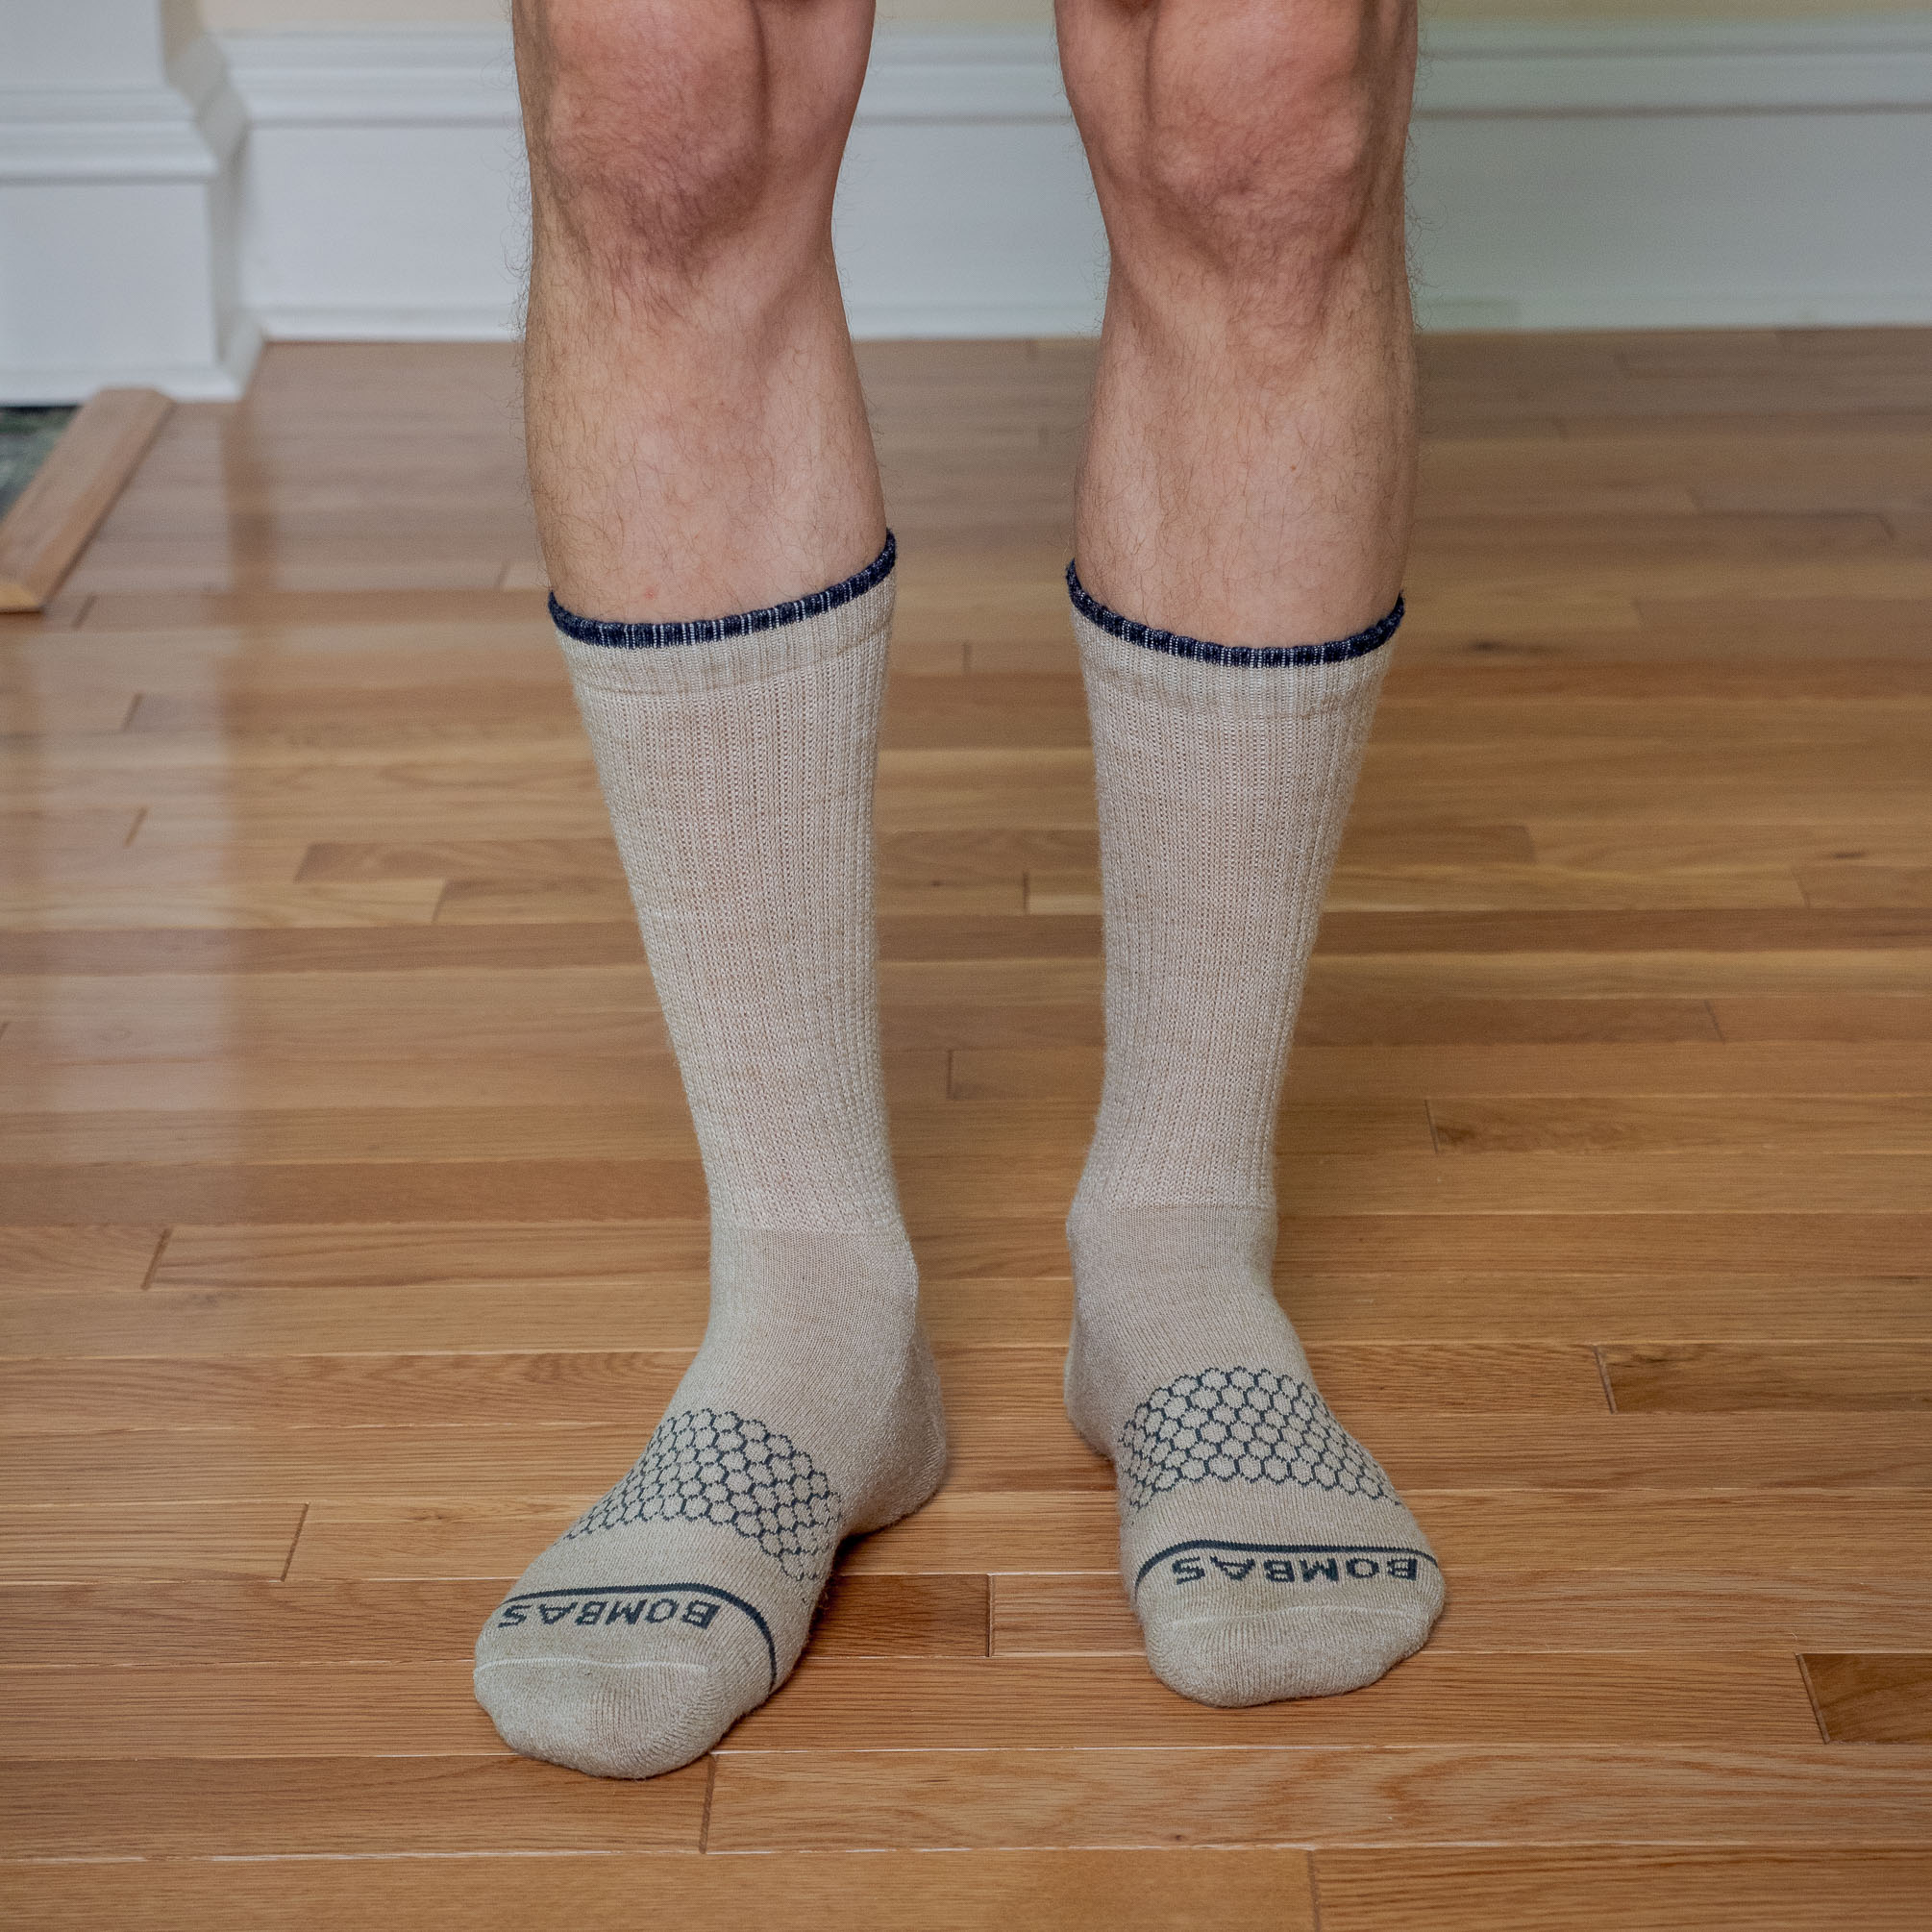 Crew Socks Vs Ankle Socks 